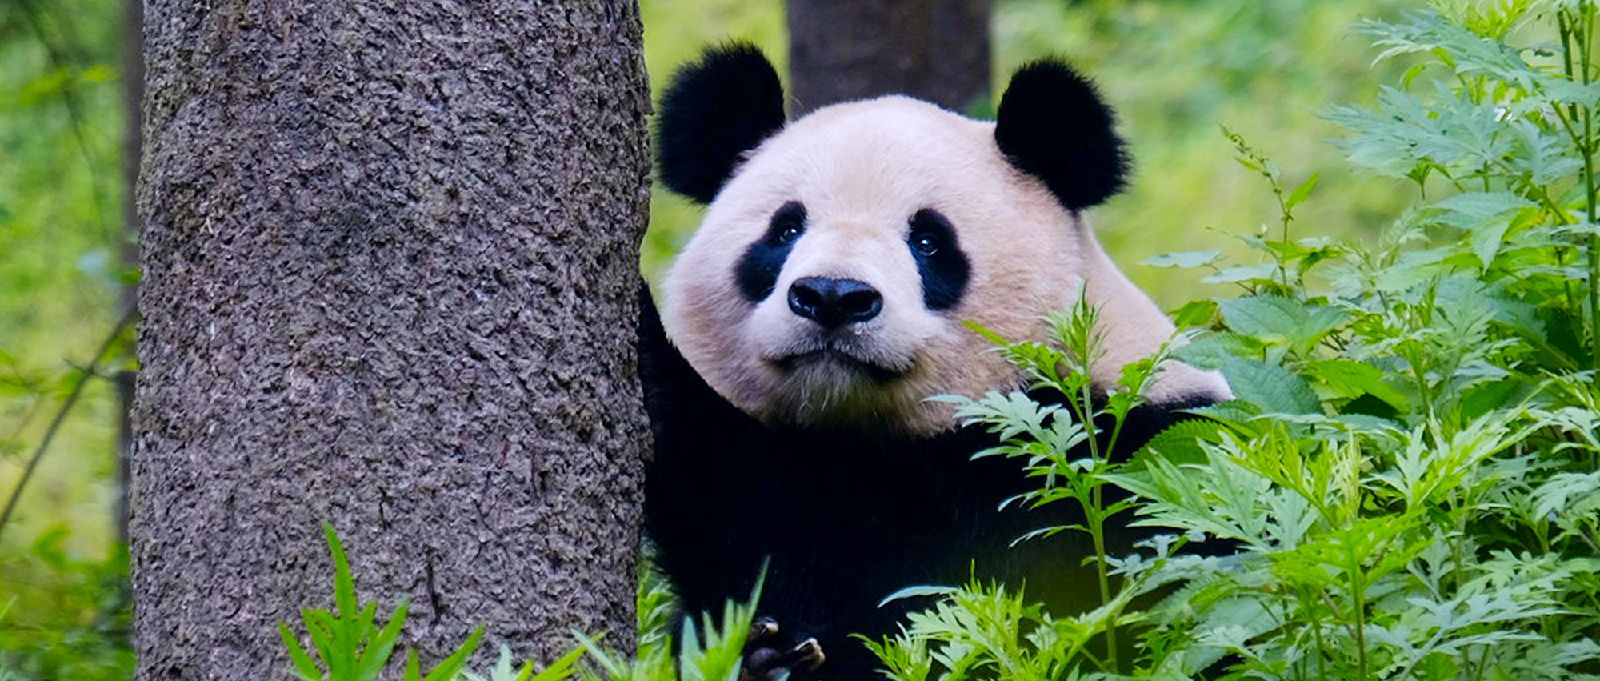 30集大熊猫保护科普知识短视频《你好！大熊猫》即将播出